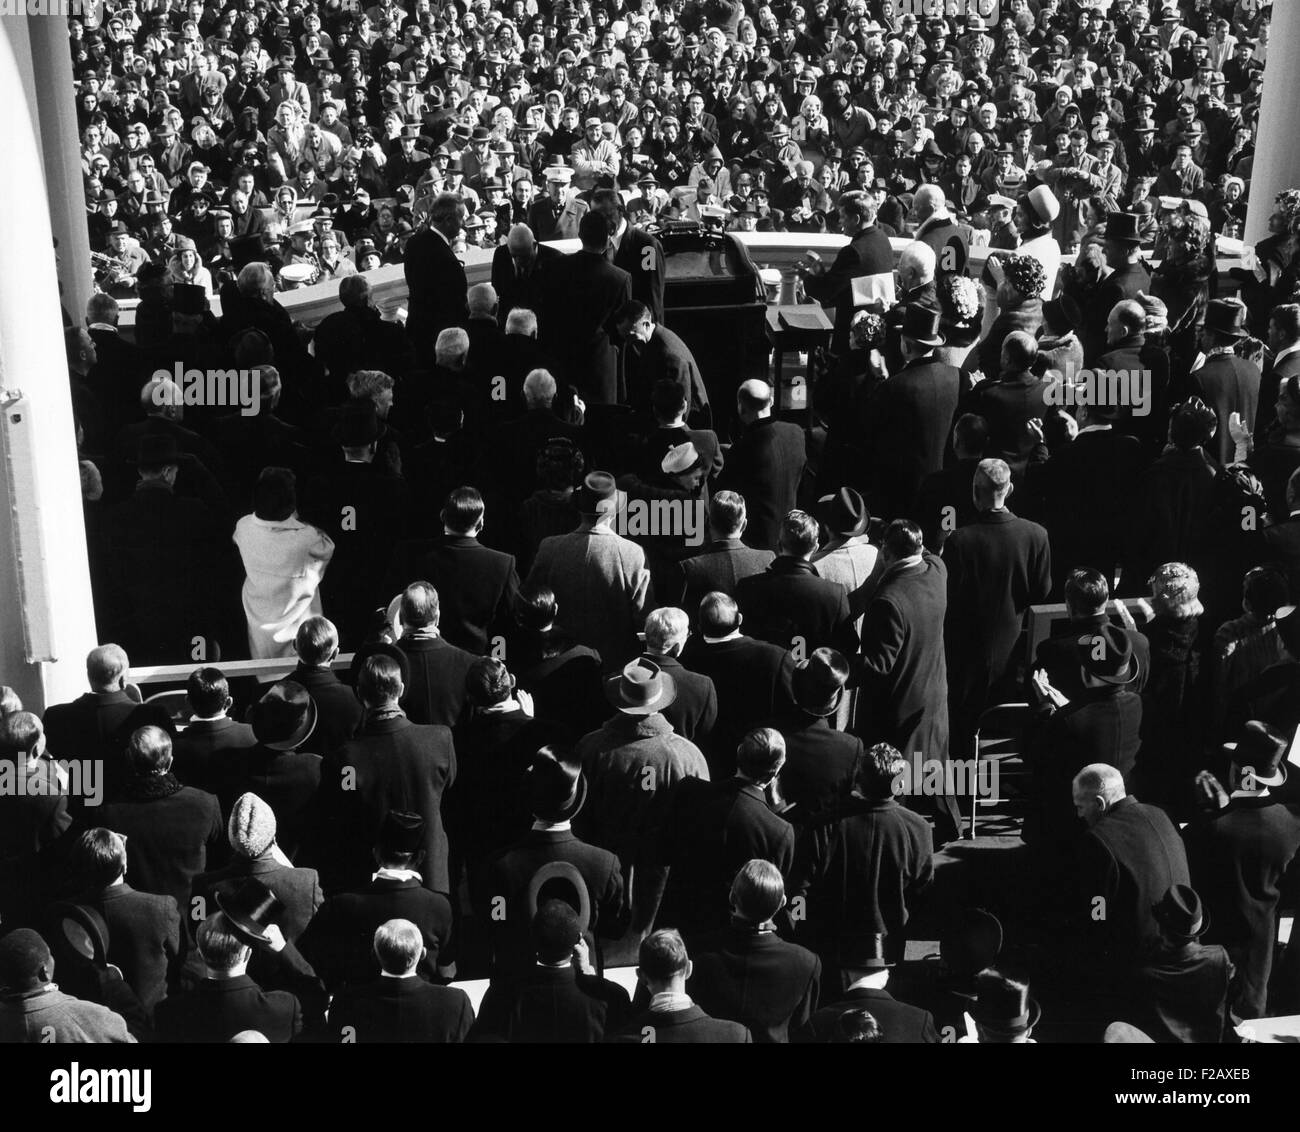 Inaugurazione di John Kennedy a est del portico, U.S. Capitol Building. Vista dal retro del pubblico, che mostra i volti della folla di seguito. Gen 20, 1961. (BSLOC 2015 2 221) Foto Stock